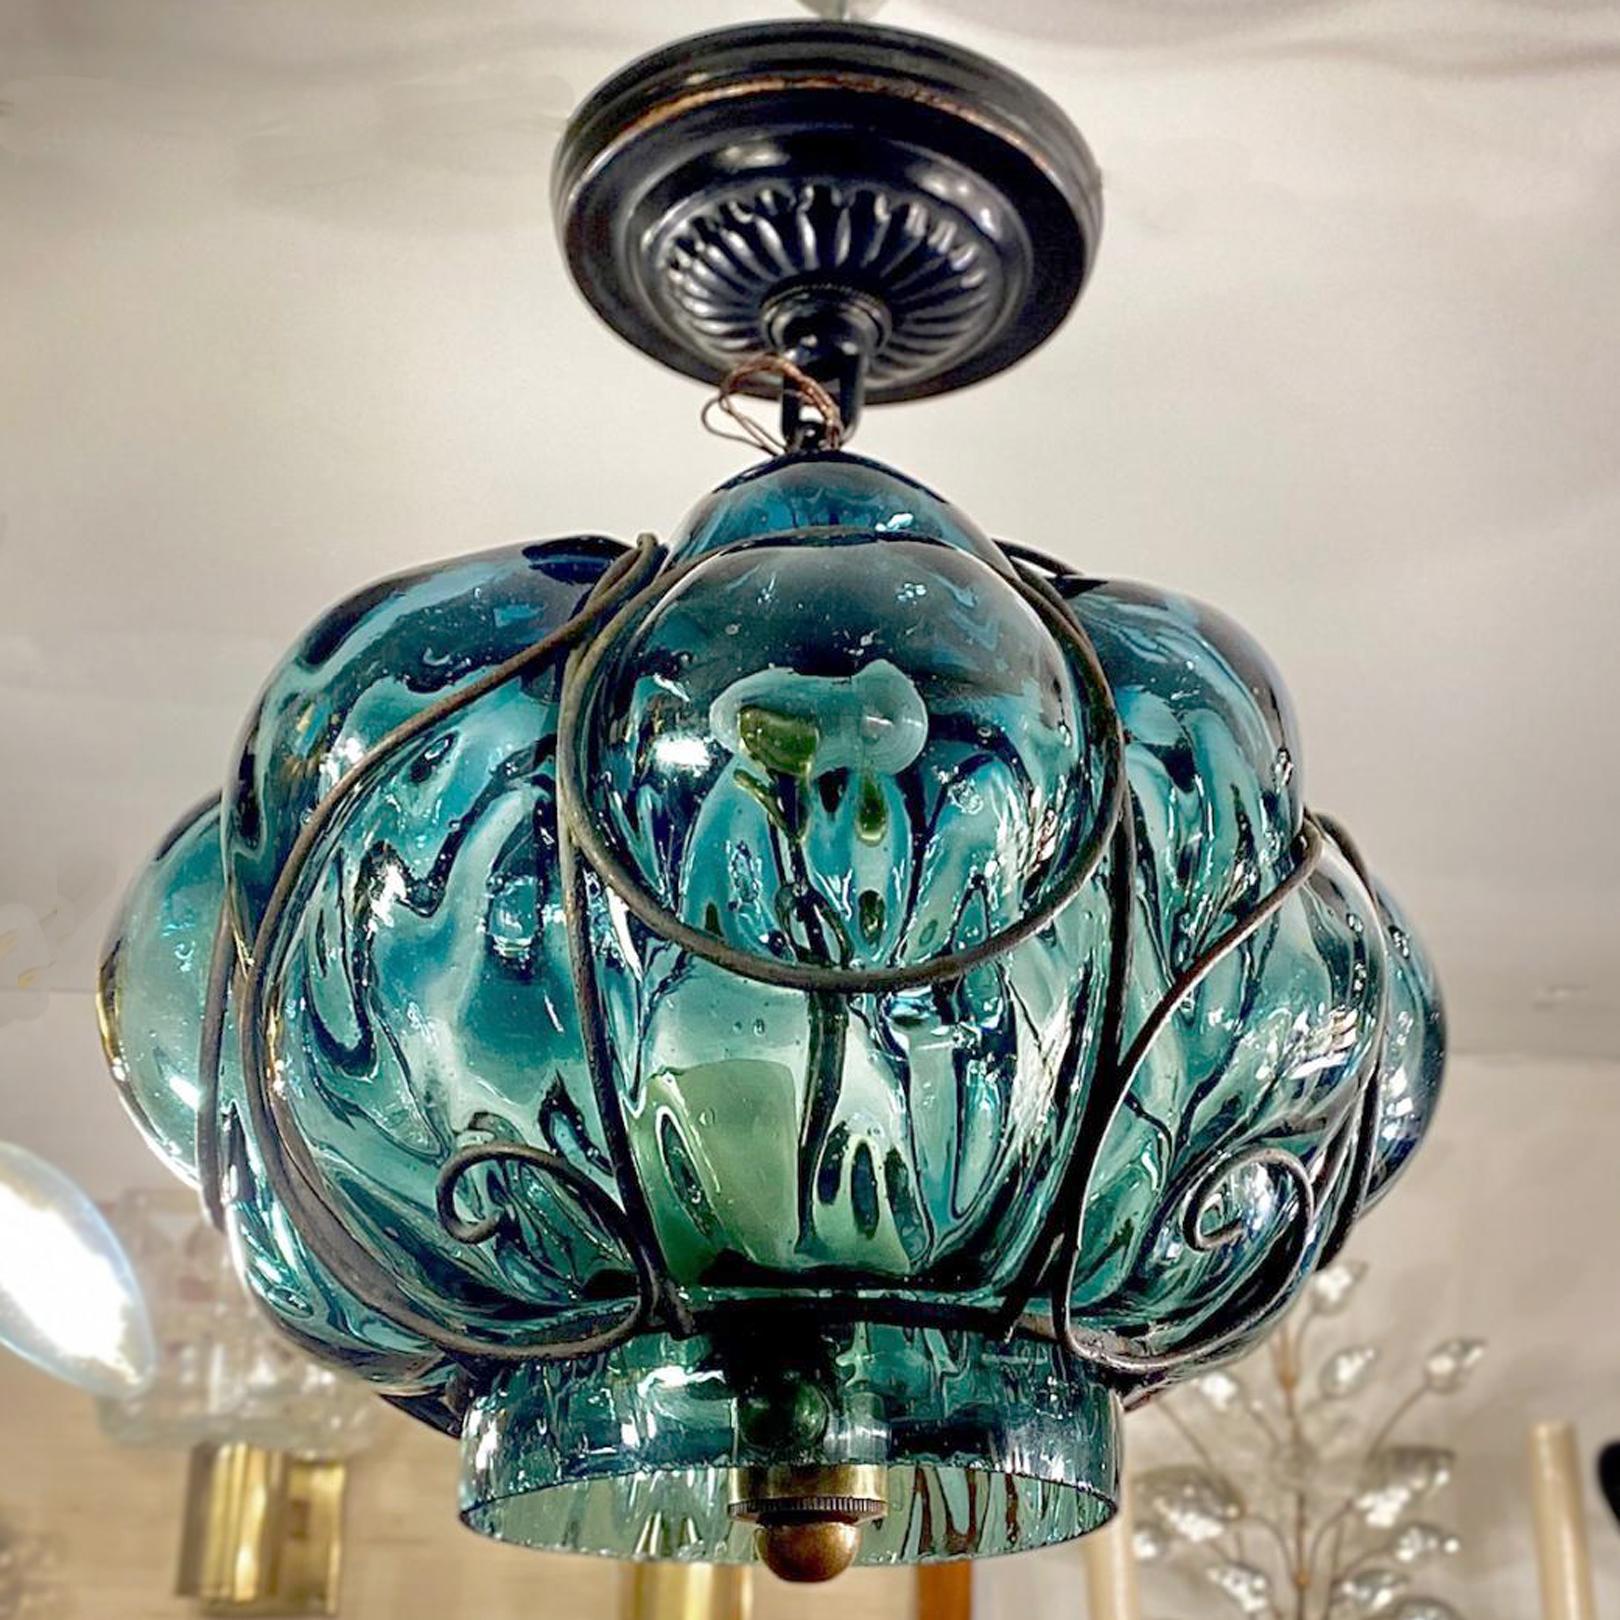 Eine italienische Laterne aus mundgeblasenem Glas mit Eisenkonstruktion und 2 Kandelabern aus den 1950er Jahren.

Abmessungen:
Durchmesser: 10